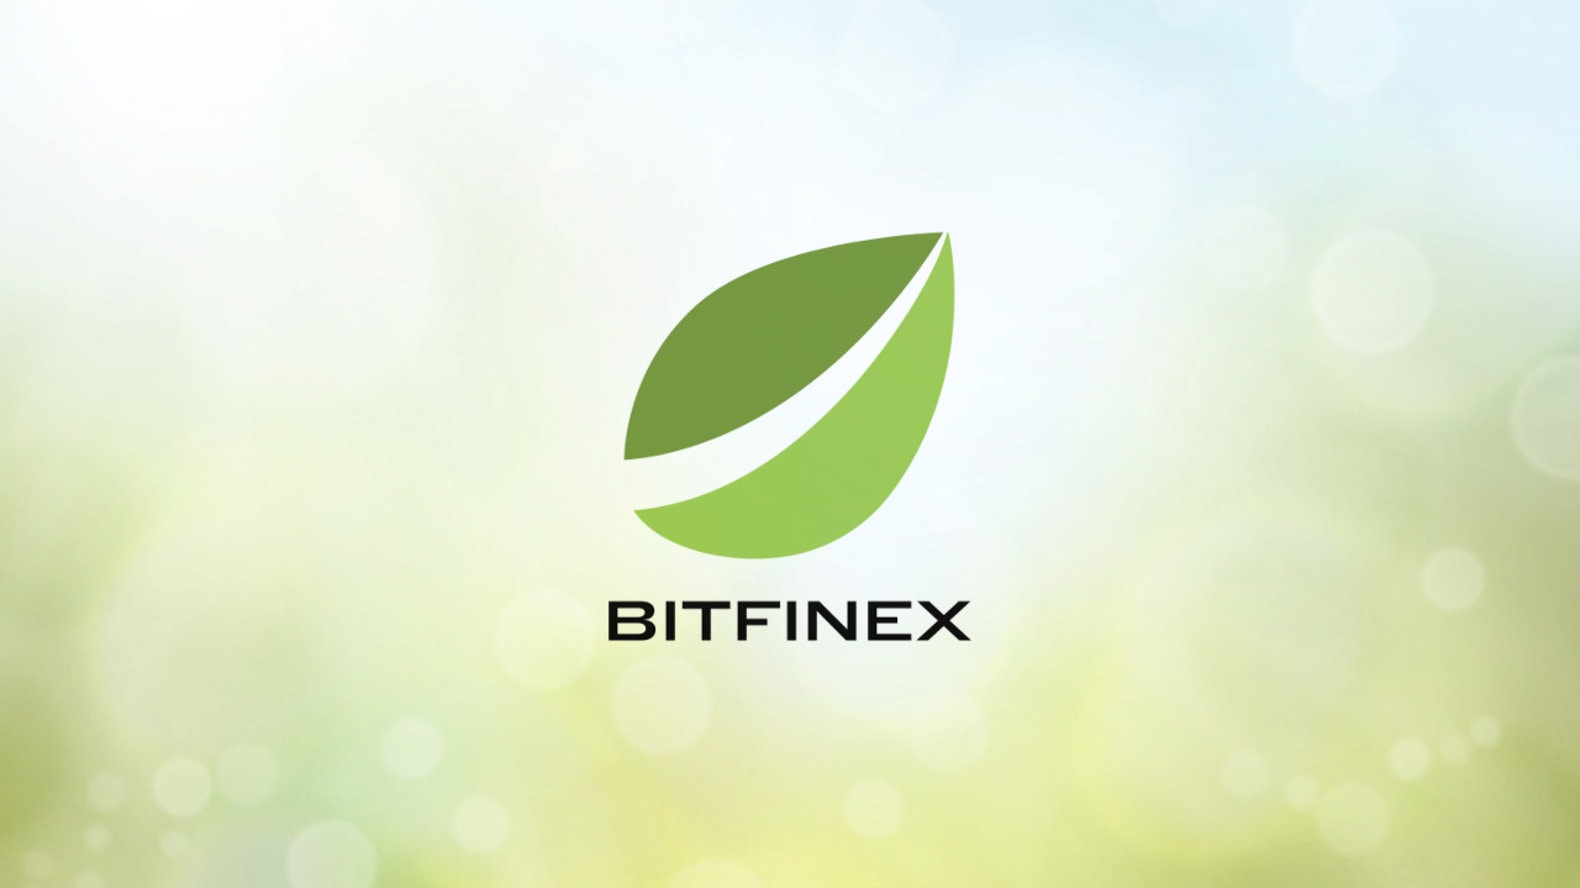 Биржа Bitfinex заплатила $23,7 млн комиссии за одну транзакцию в эфире.